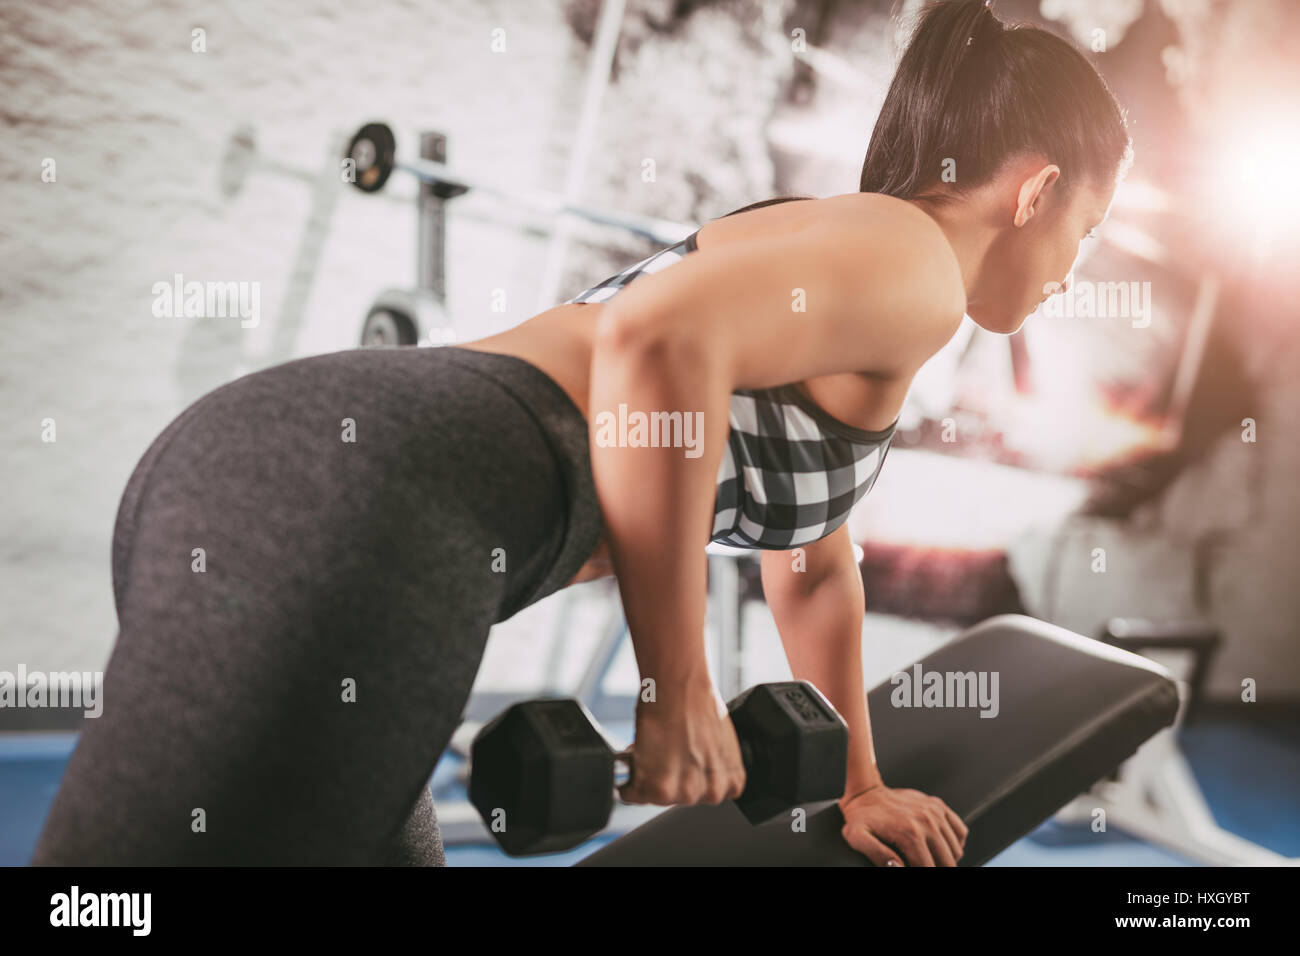 Schöne junge muskulöse Frau Übung im Fitnessstudio den Rücken zu stärken. Stockfoto